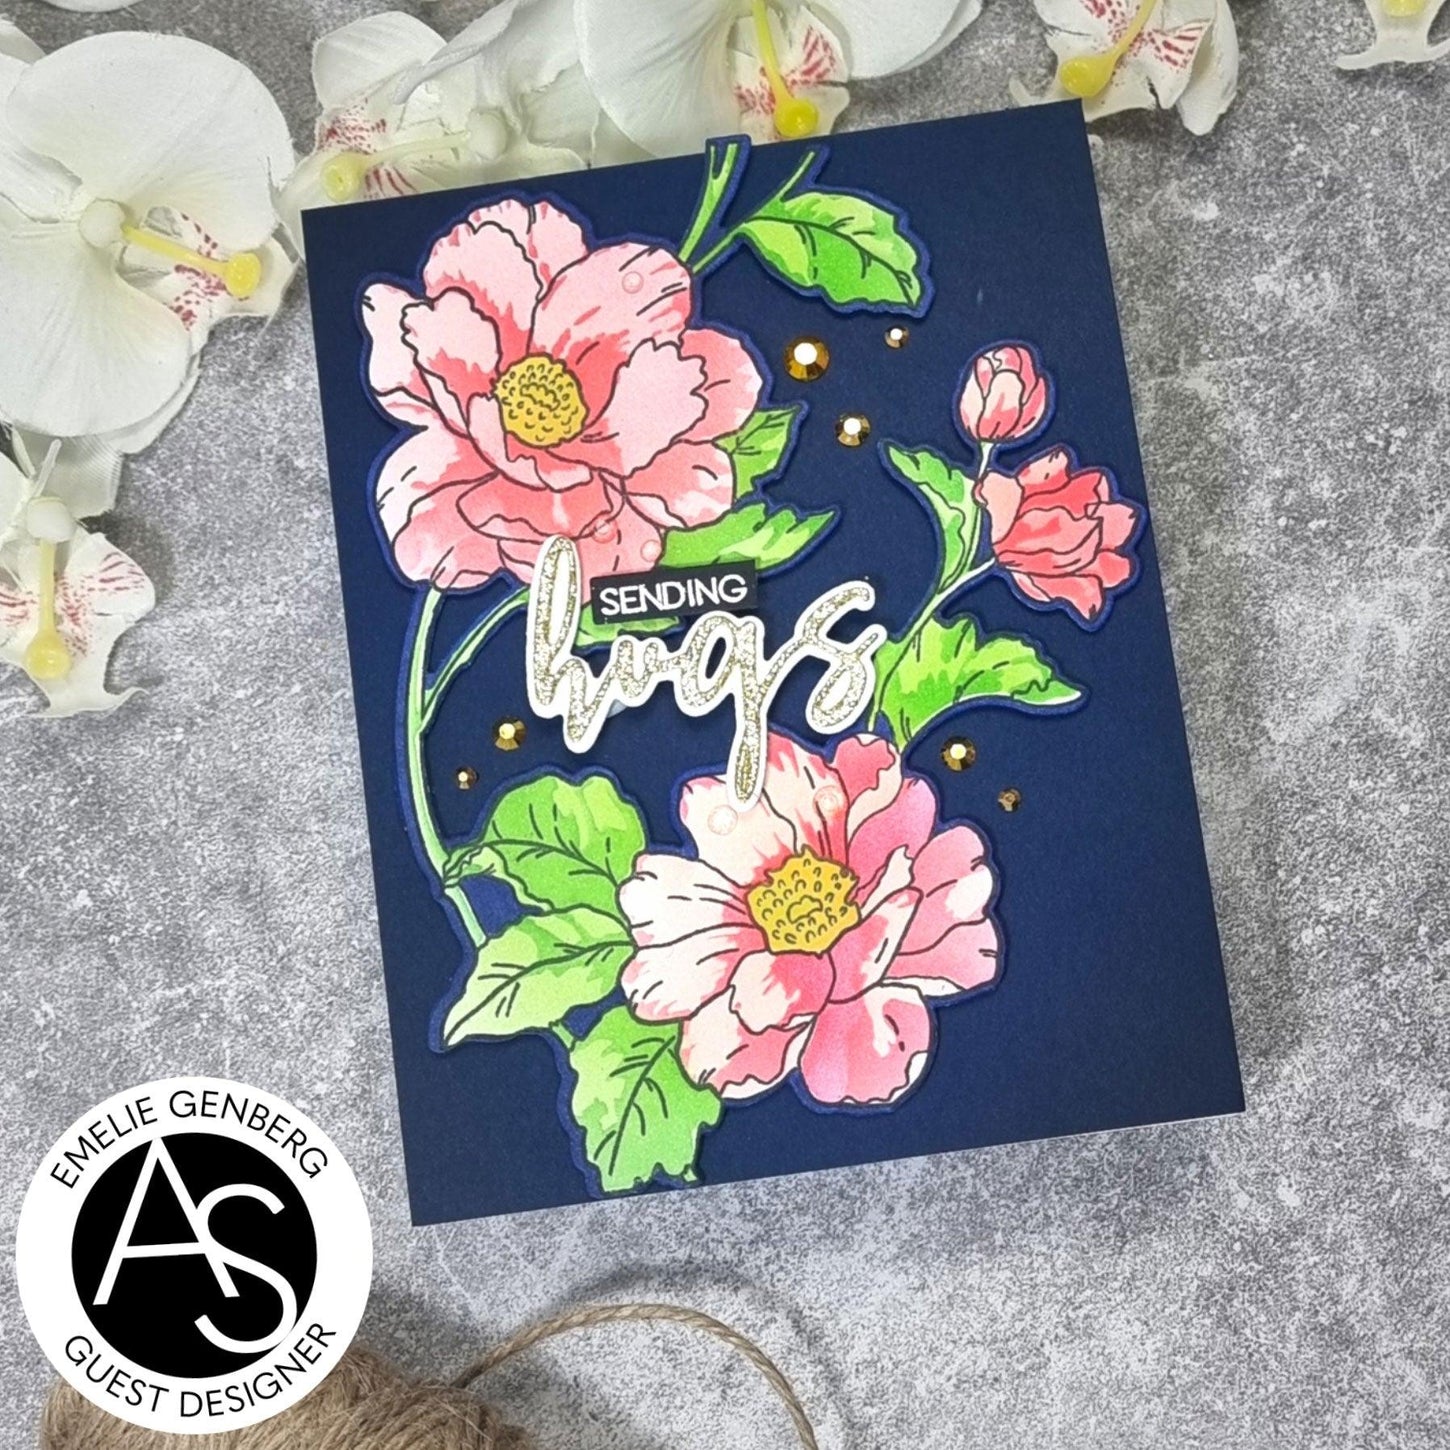 spring-garden-stamp-set-layering-stencil-alex-syberia-designs-flowers-coloring-cardmaking-tutorials-blog-handmadecards-diycards-karten